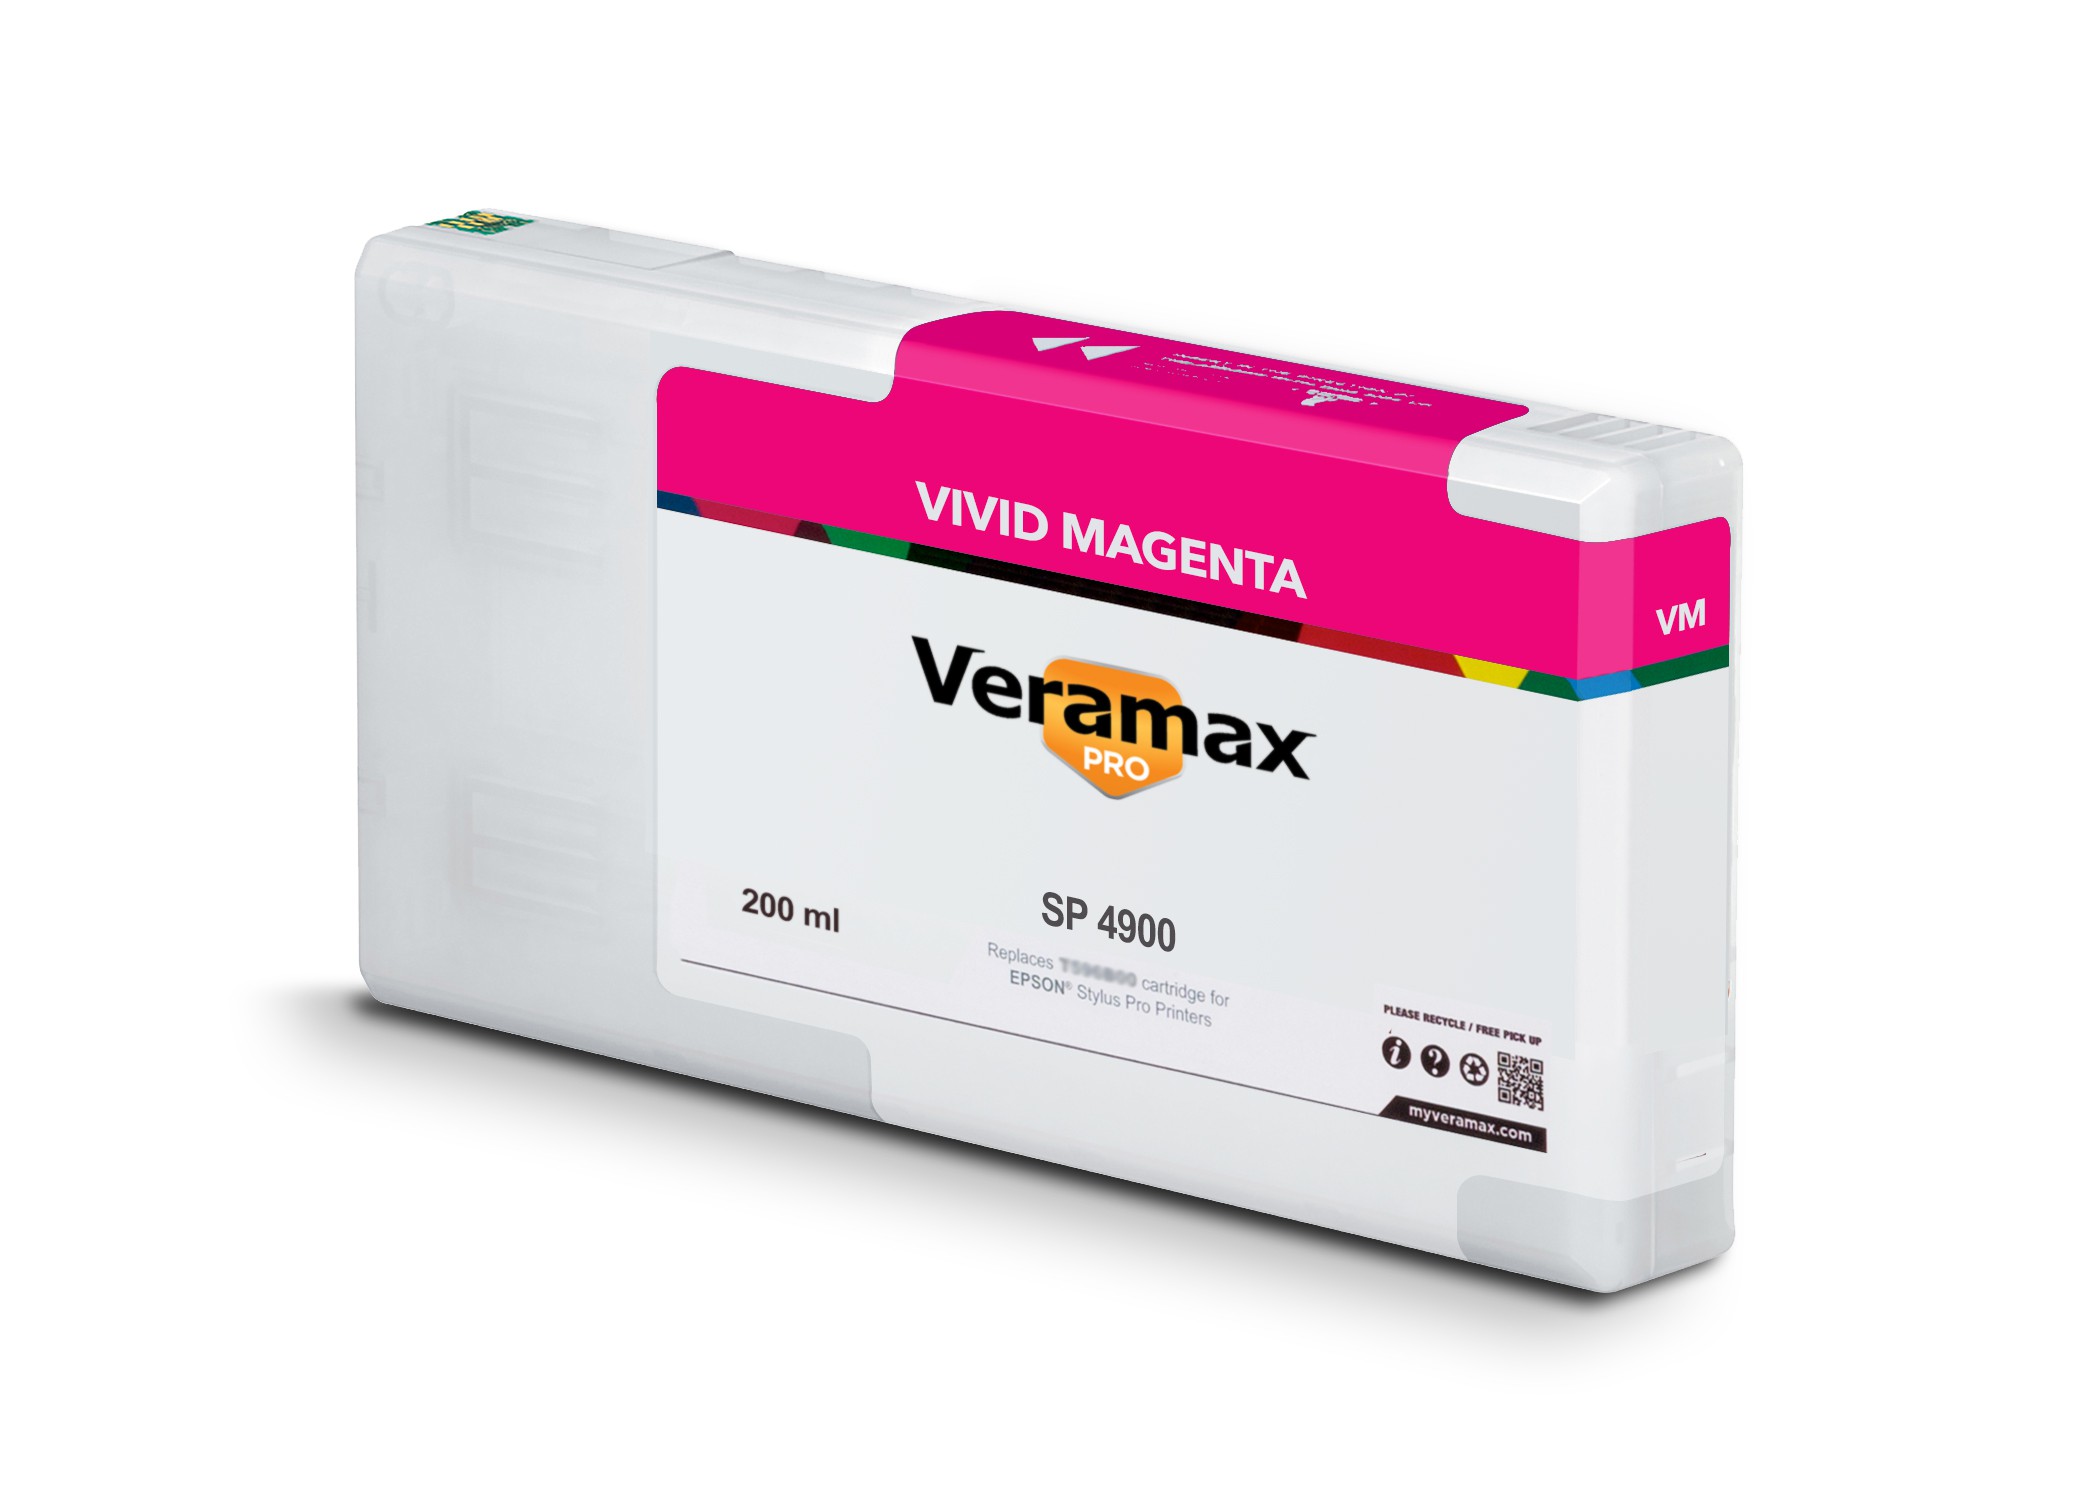 Veramax PRO SP 4900 200ml Vivid Magenta